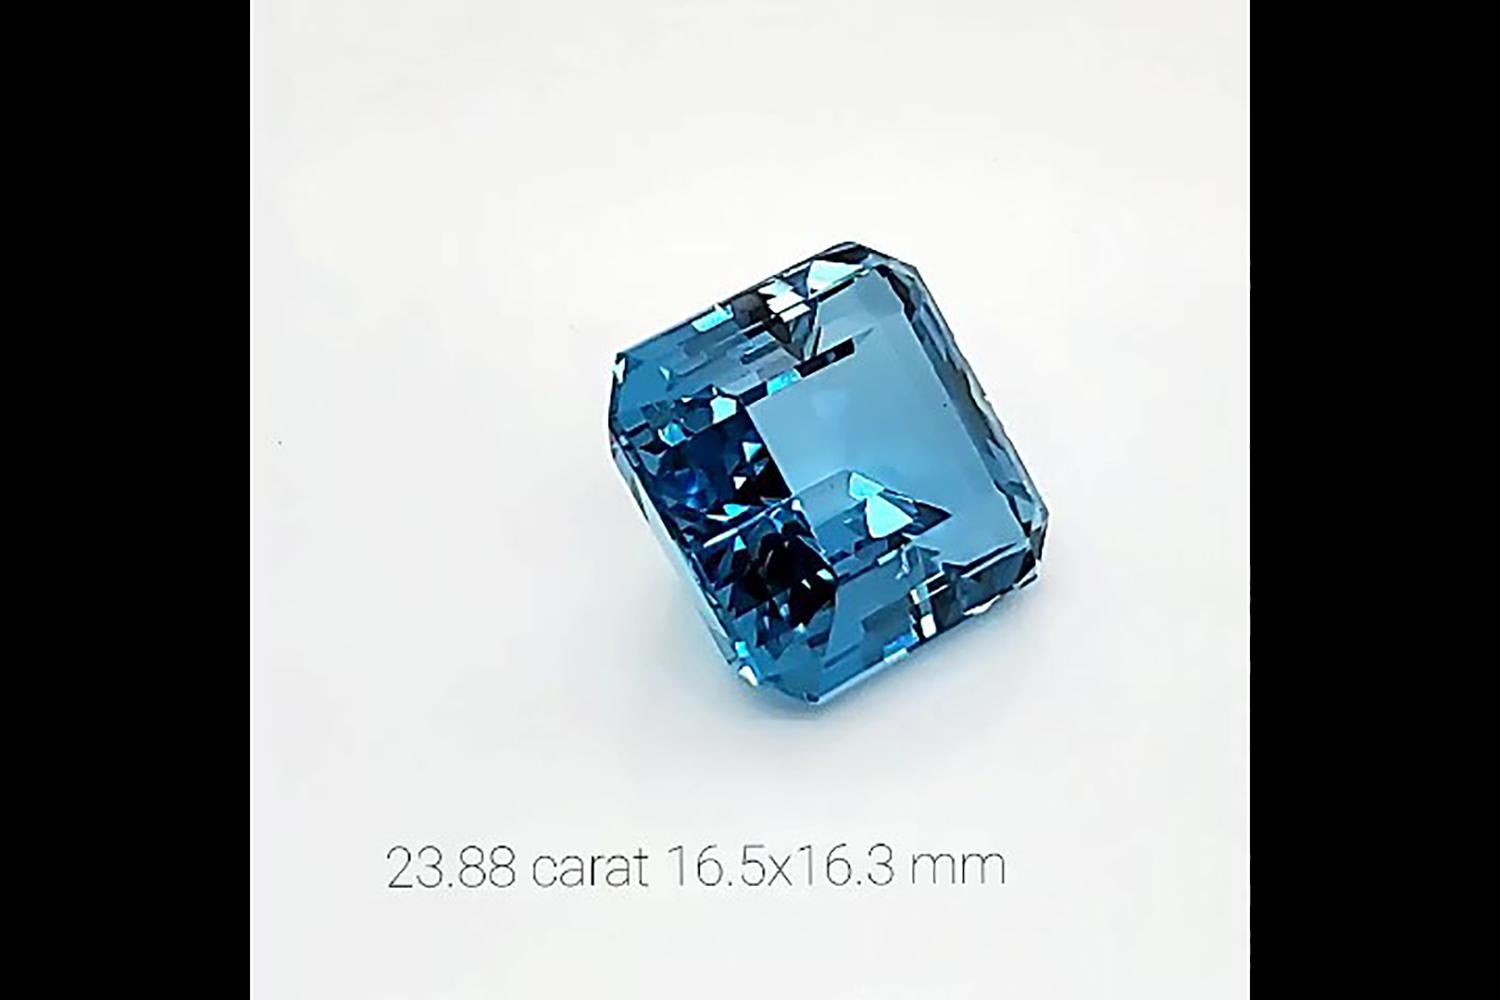 aquamarine stone for sale